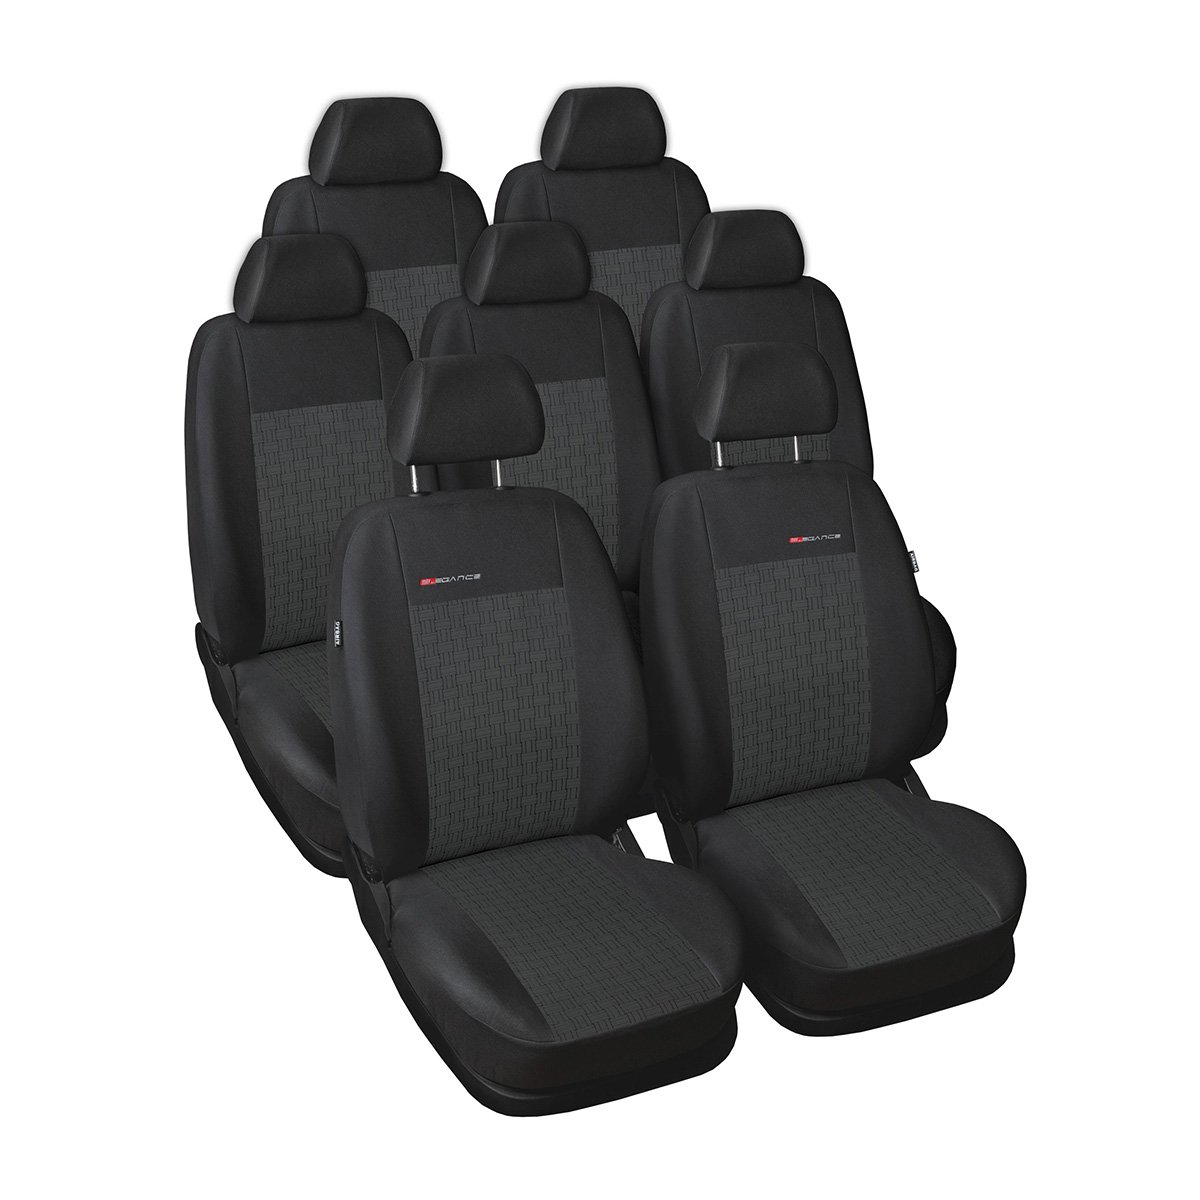 Mossa - Maßgeschneiderte Sitzbezüge Auto kompatibel mit Seat Alhambra II Van (2010-2020) - ohne Kindersitze in den hinteren Sitzen - Autositzbezüge Schonbezüge für Autositze - E1 von Mossa